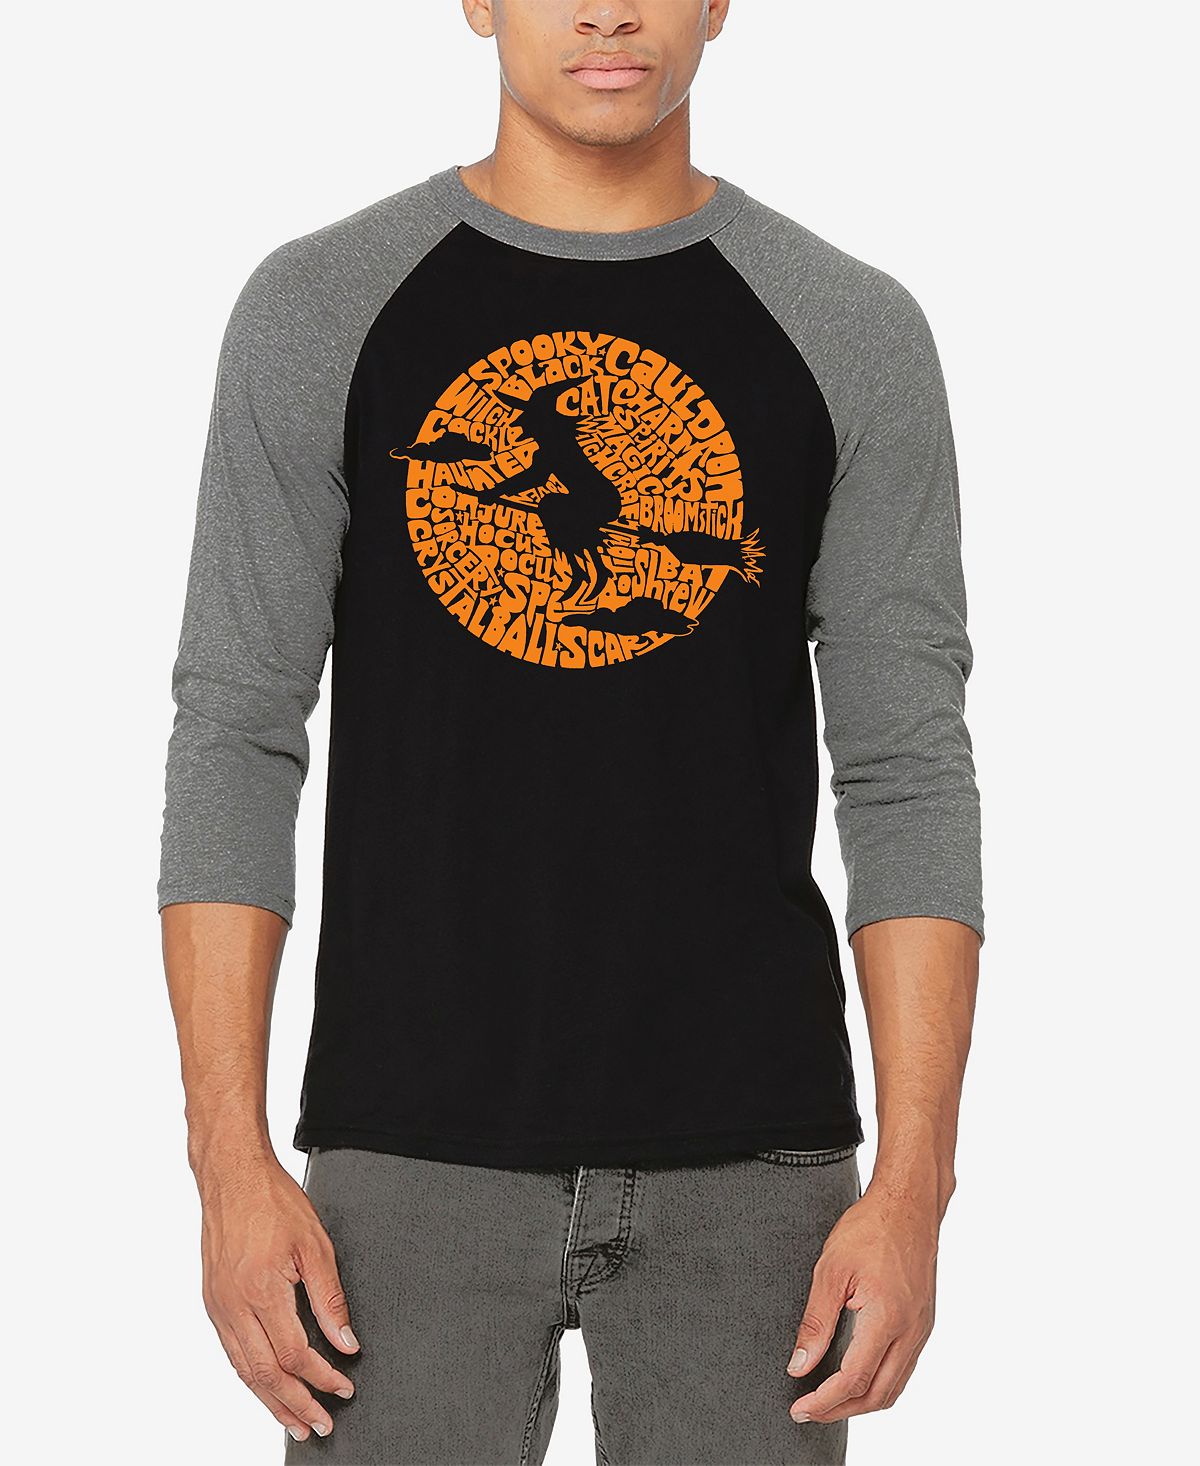 Мужская бейсбольная футболка с регланом spooky witch word art футболка LA Pop Art, мульти